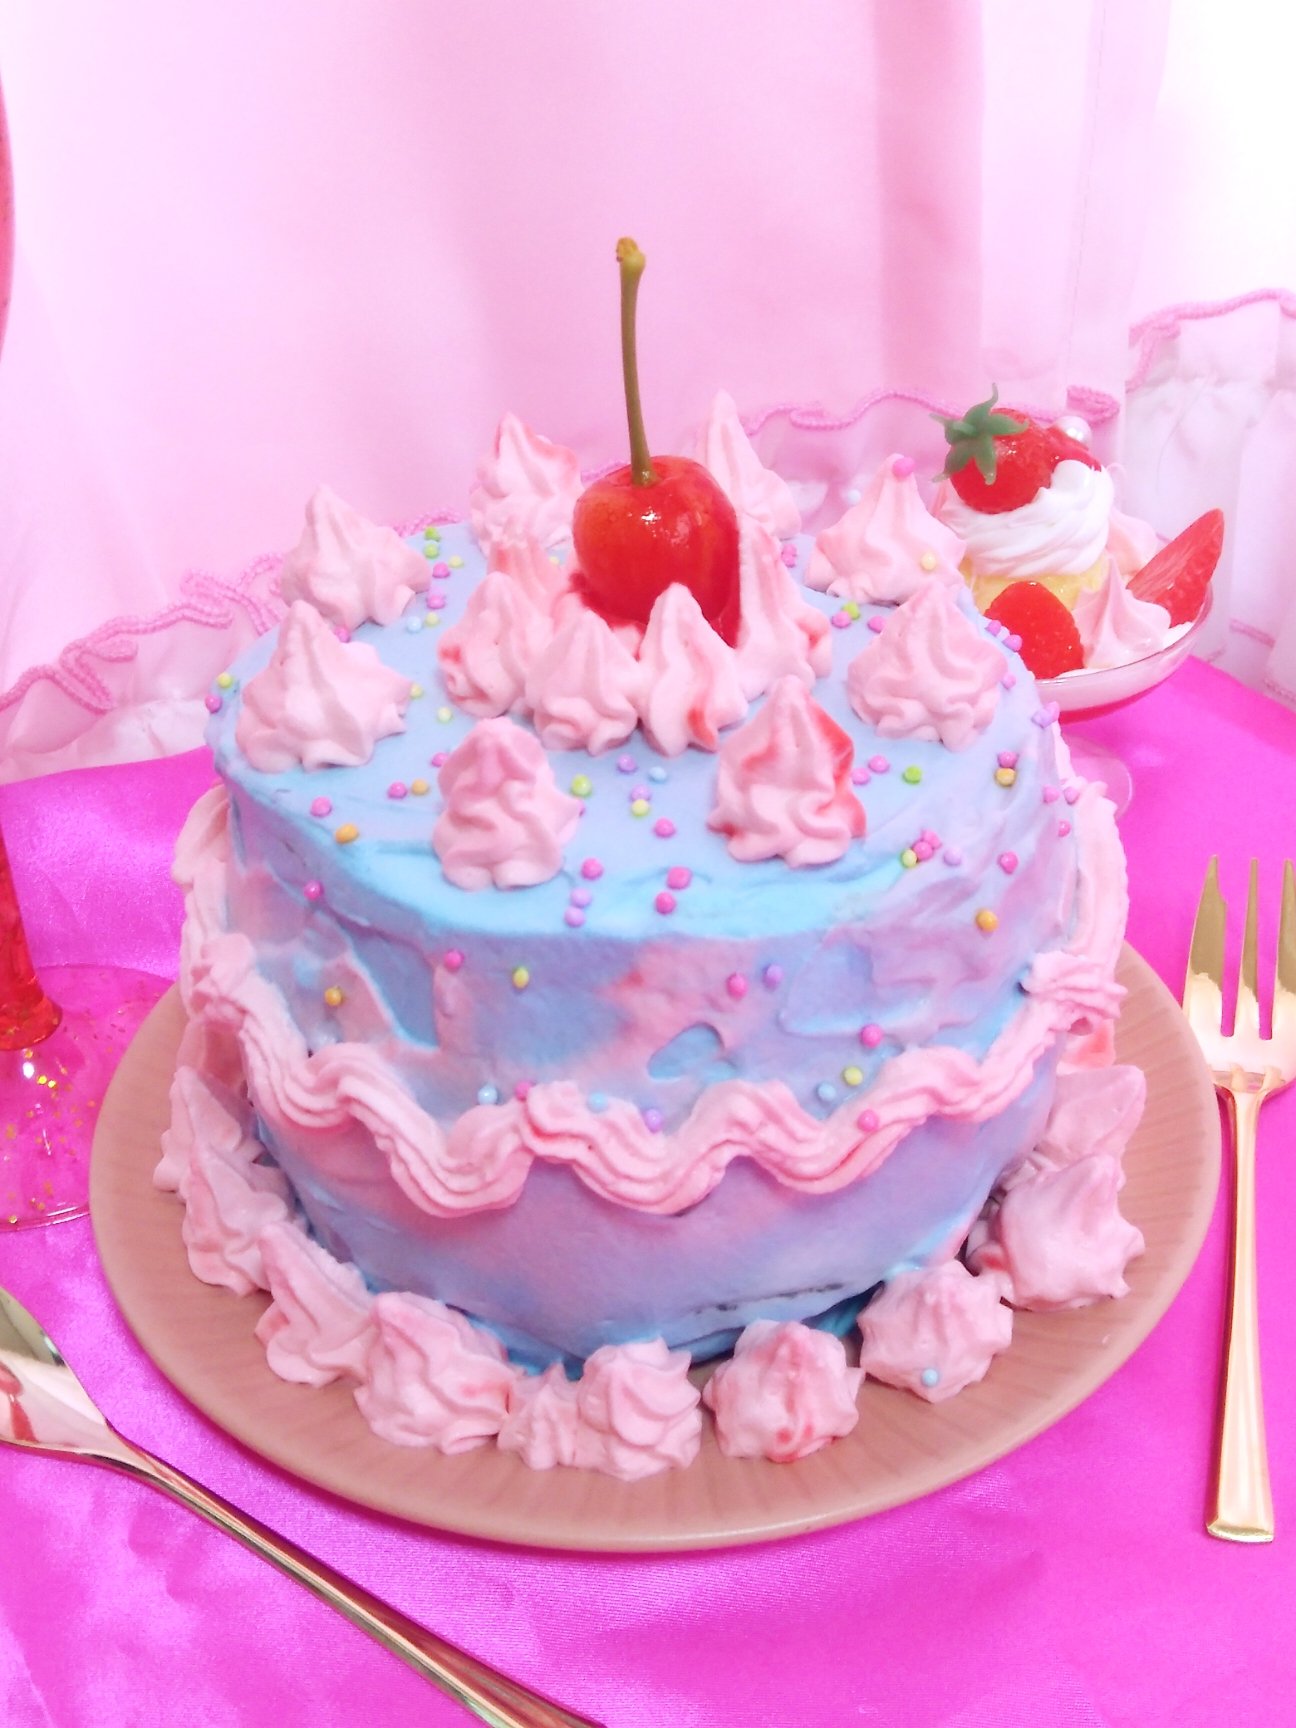 Himeno ピンクとブルーのメルヘンチックなケーキを作ってみました 手作りケーキ 手作りスイーツ ピンクと水色 チェリーケーキ さくらんぼ ケーキ カラフル ゆめかわいい メルヘンチック 女子力向上 女子力アップ かわいい食べ物 甘い物好き